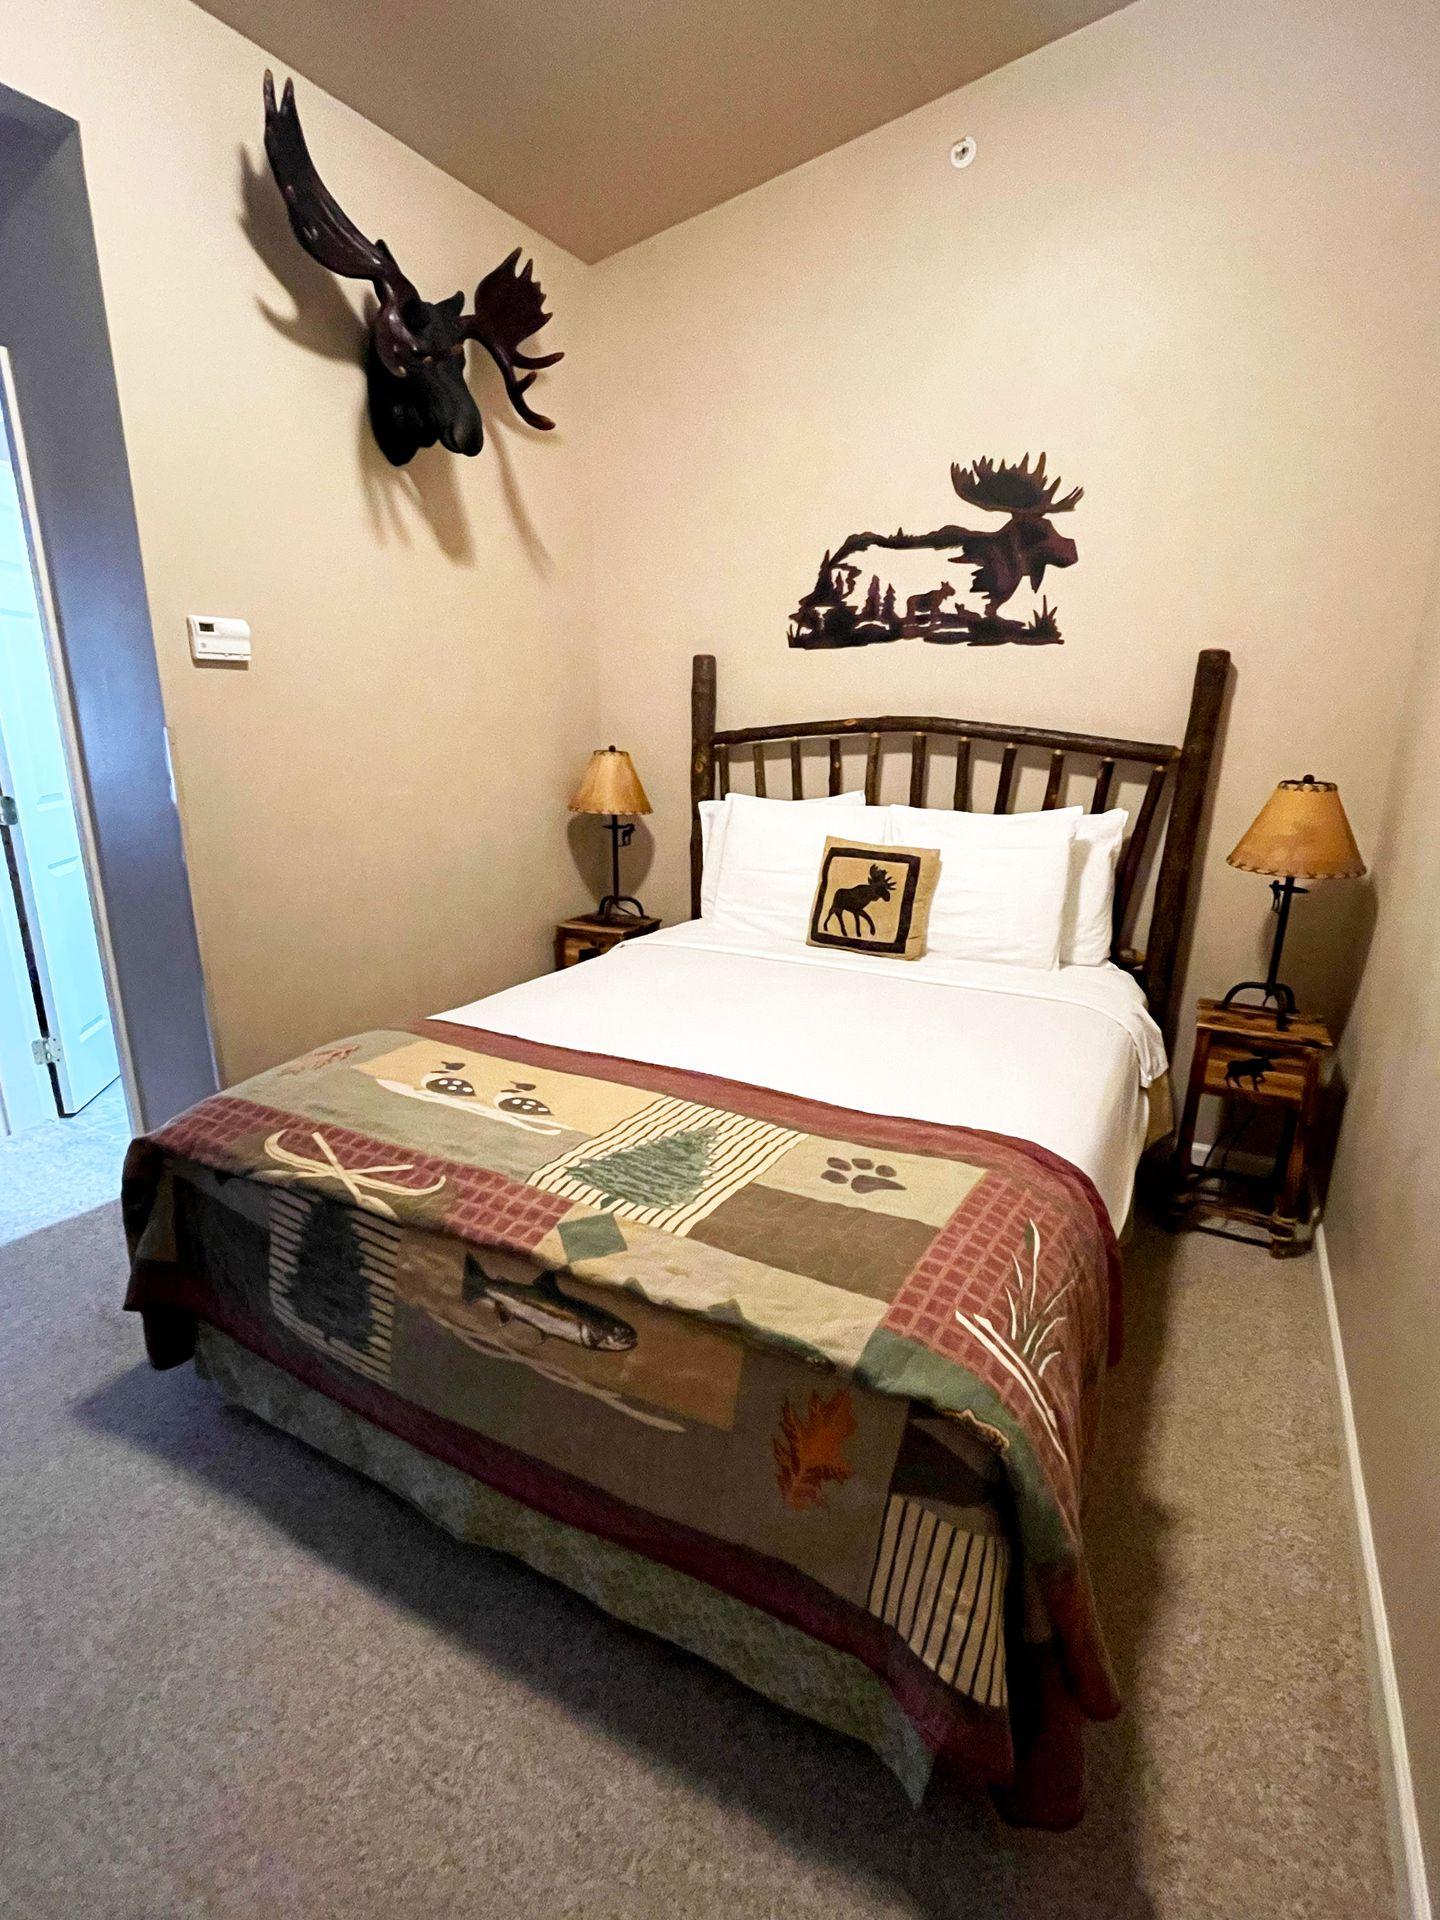 A bed in a room at the Buffalo Run Inn